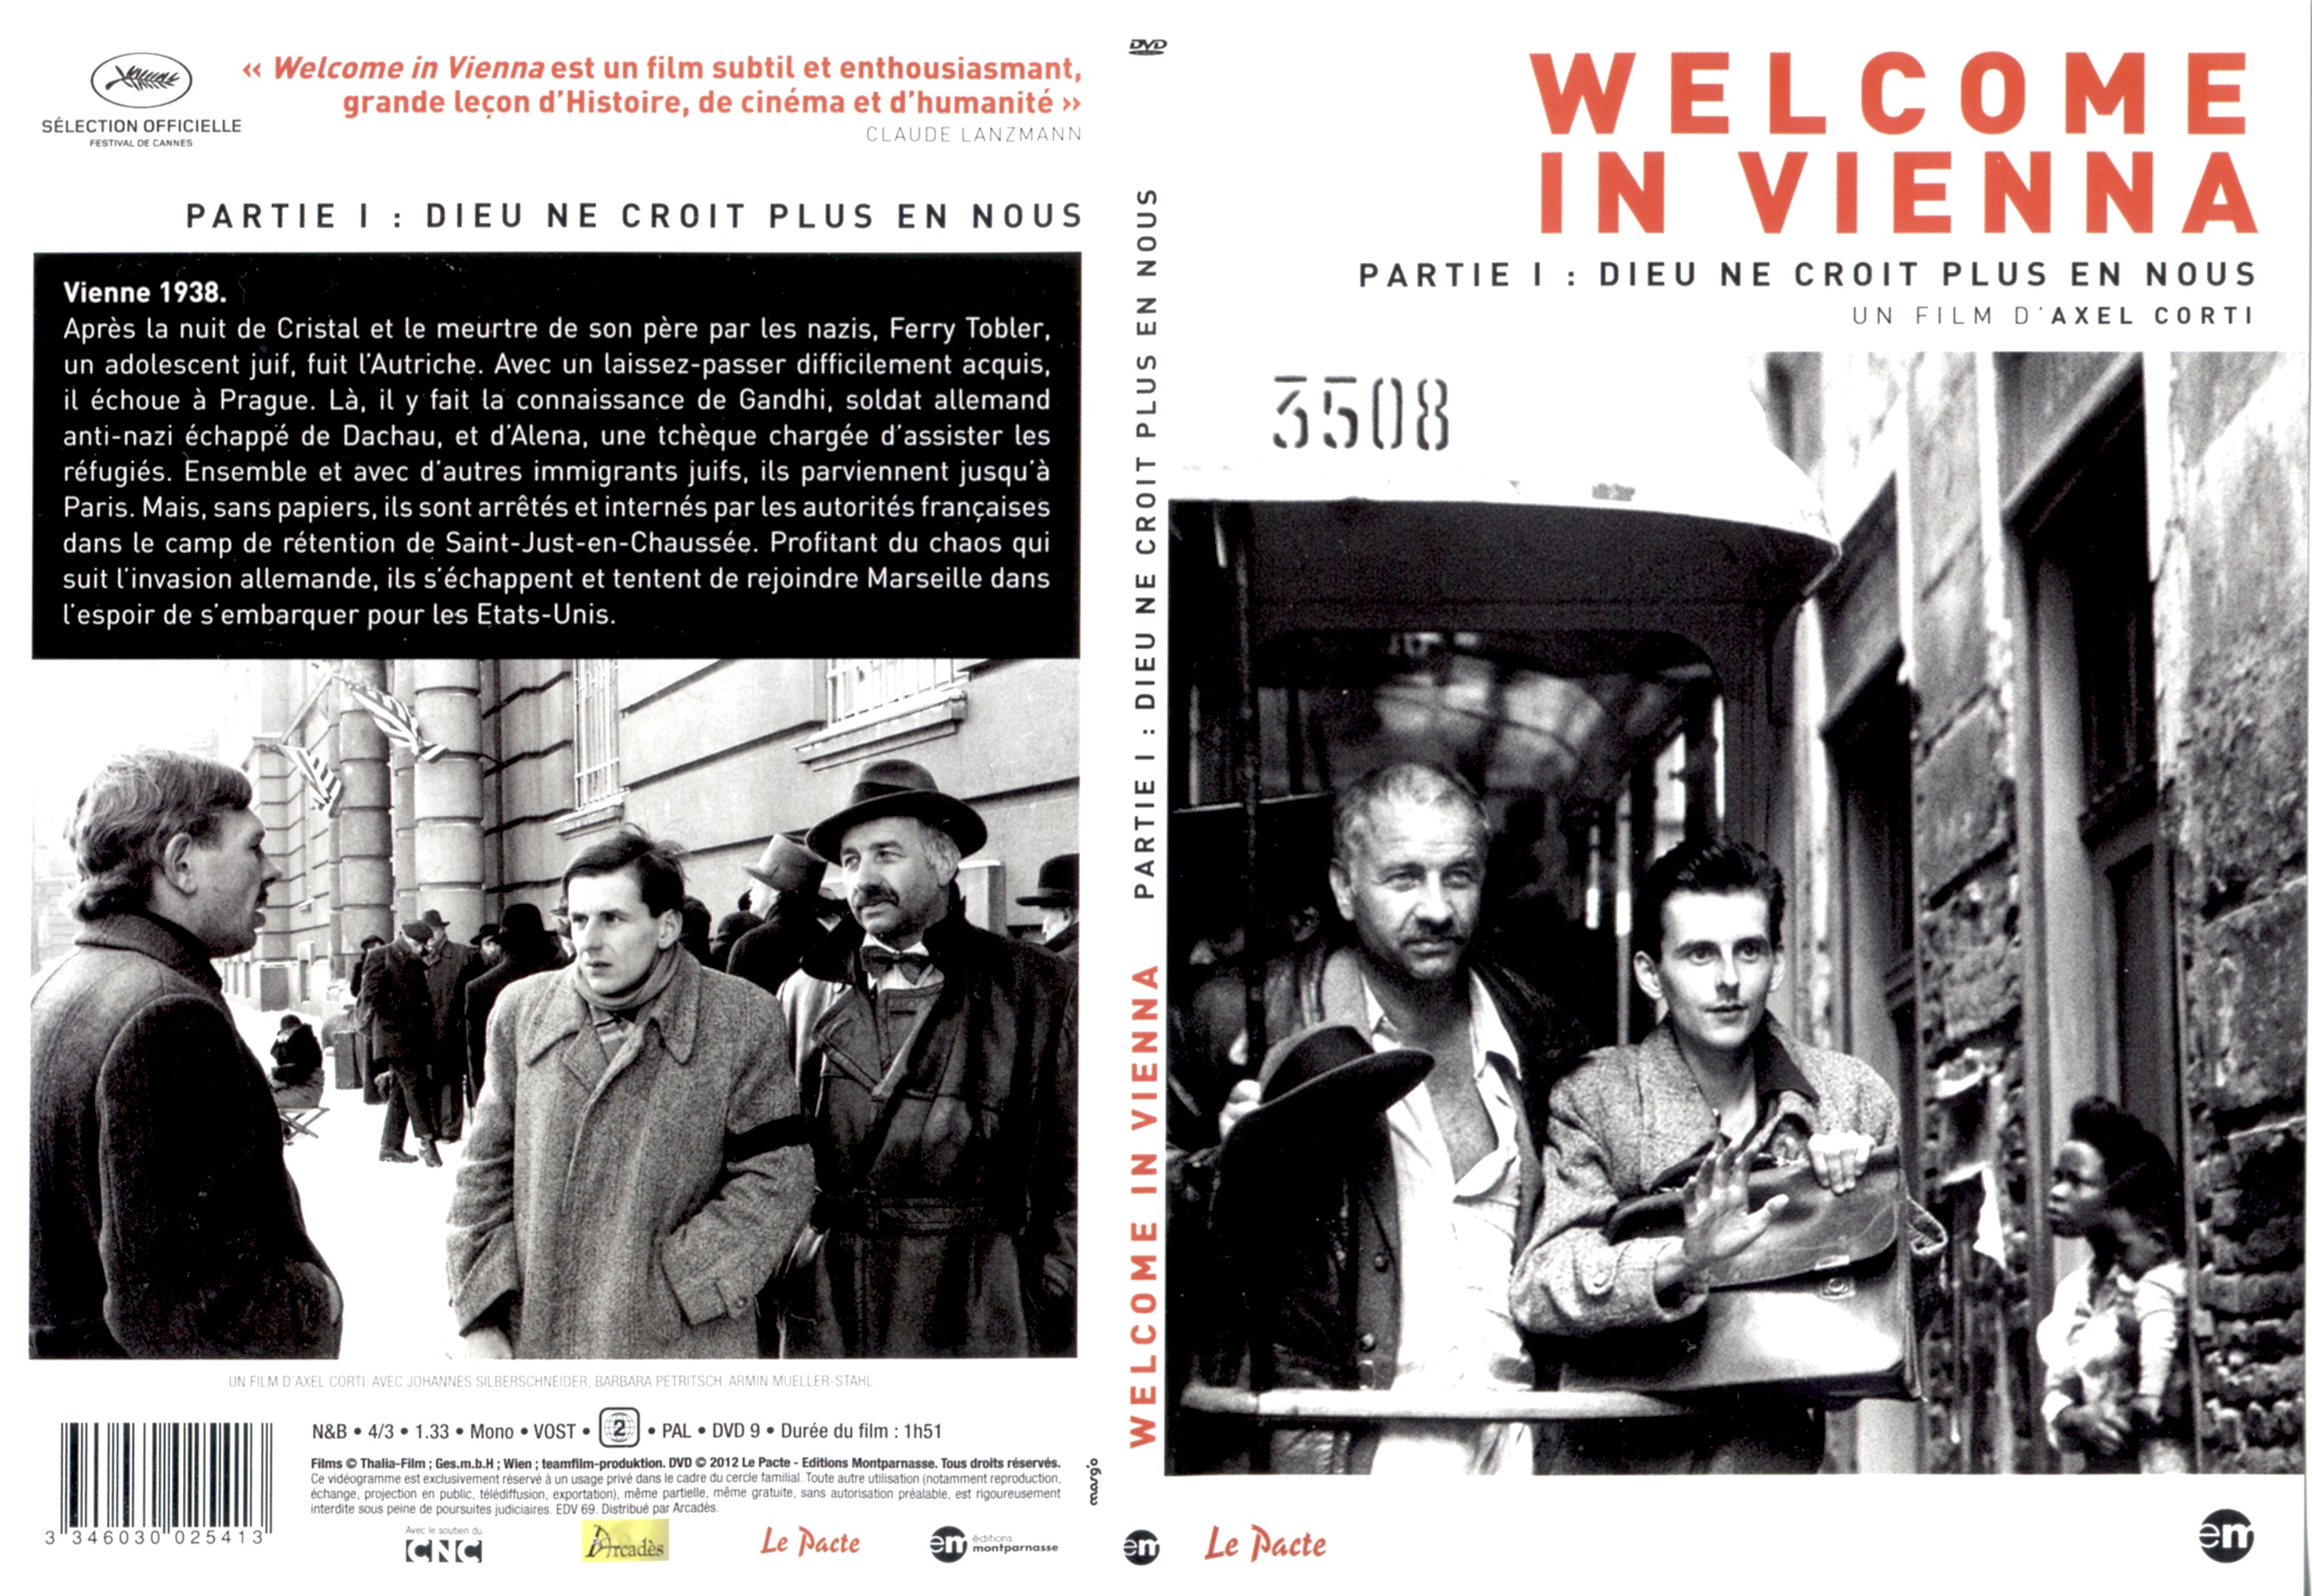 Jaquette DVD Welcome in Vienna Partie 1 Dieu ne croit plus en nous